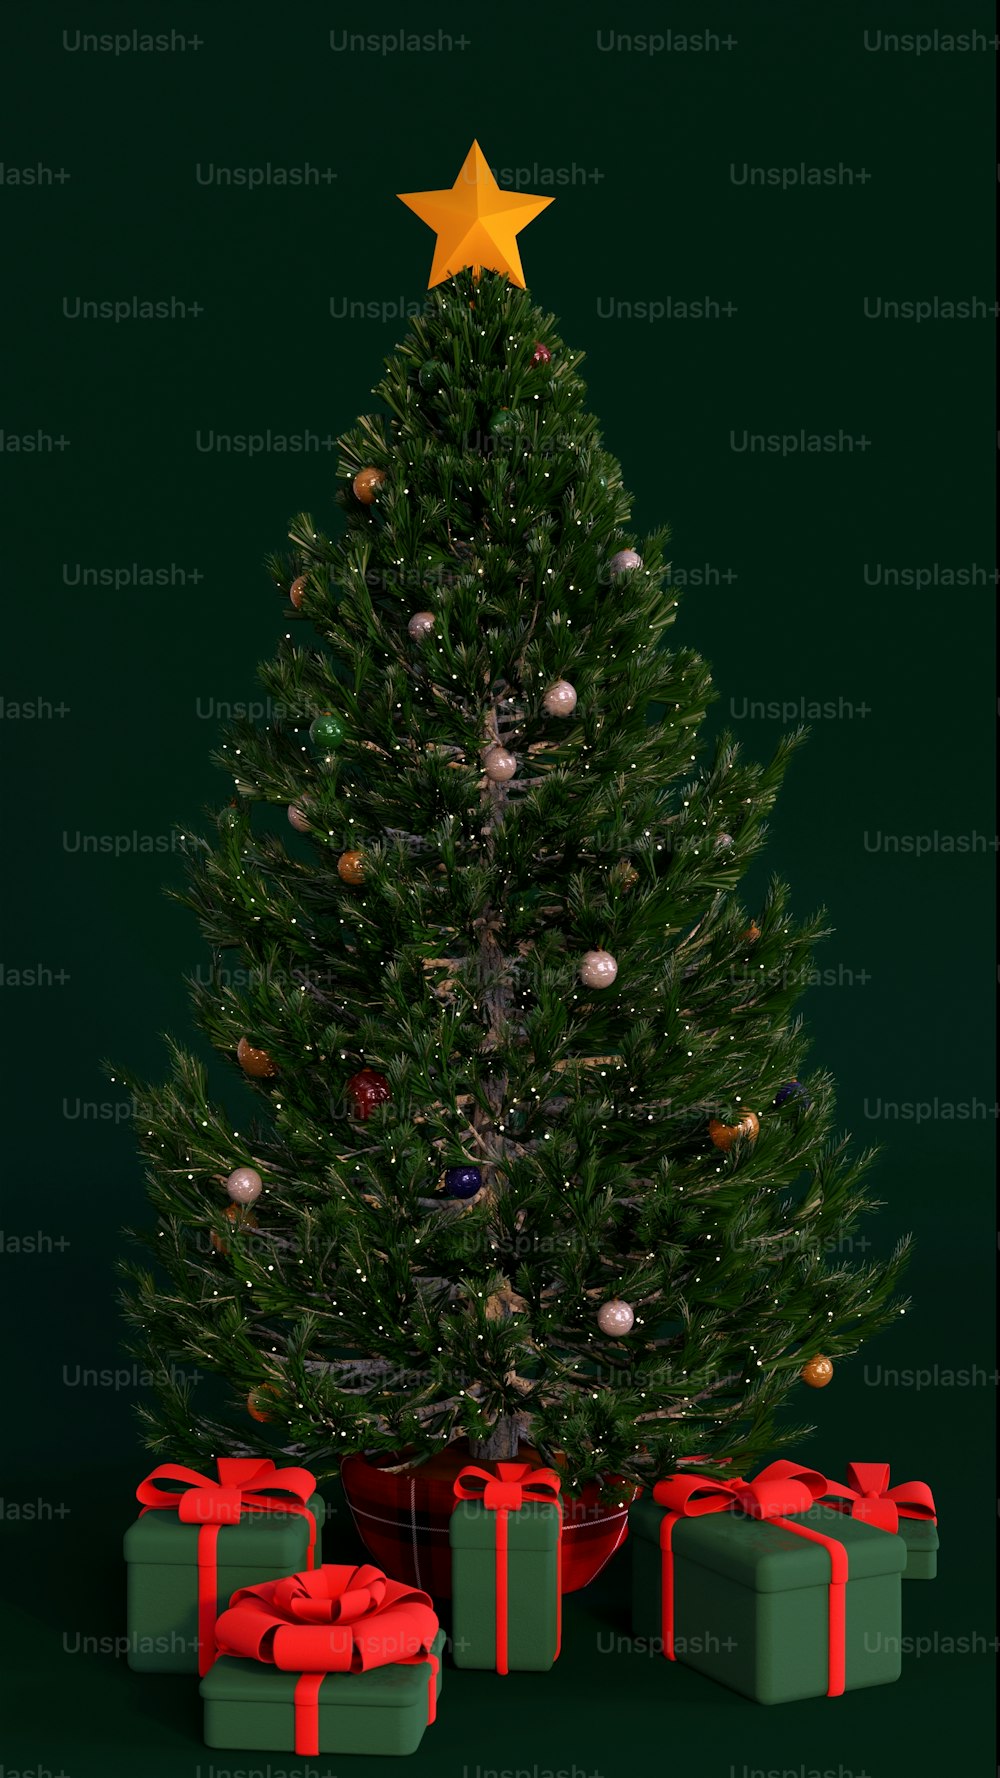 Ein Weihnachtsbaum mit Geschenken darunter und einem Stern oben drauf